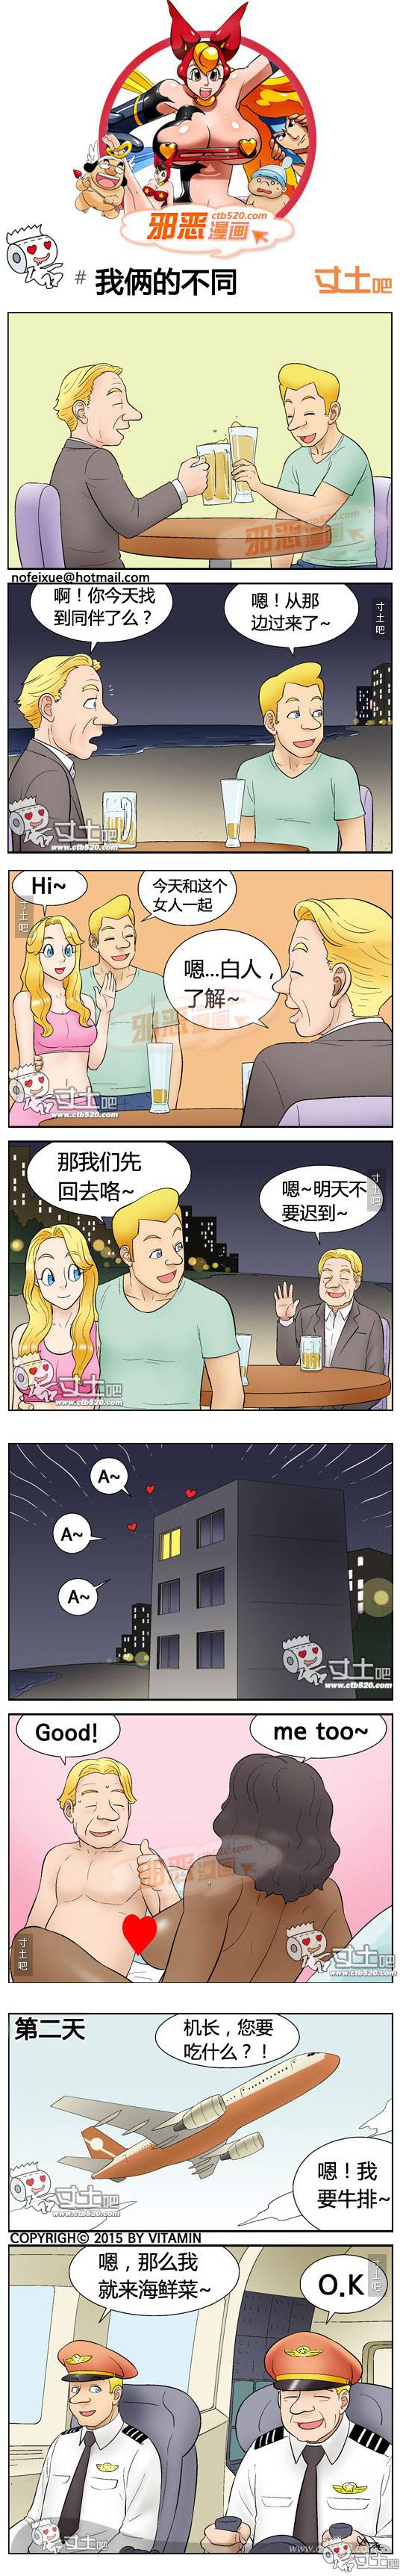 邪恶漫画爆笑囧图第320刊：橘子的用途变更